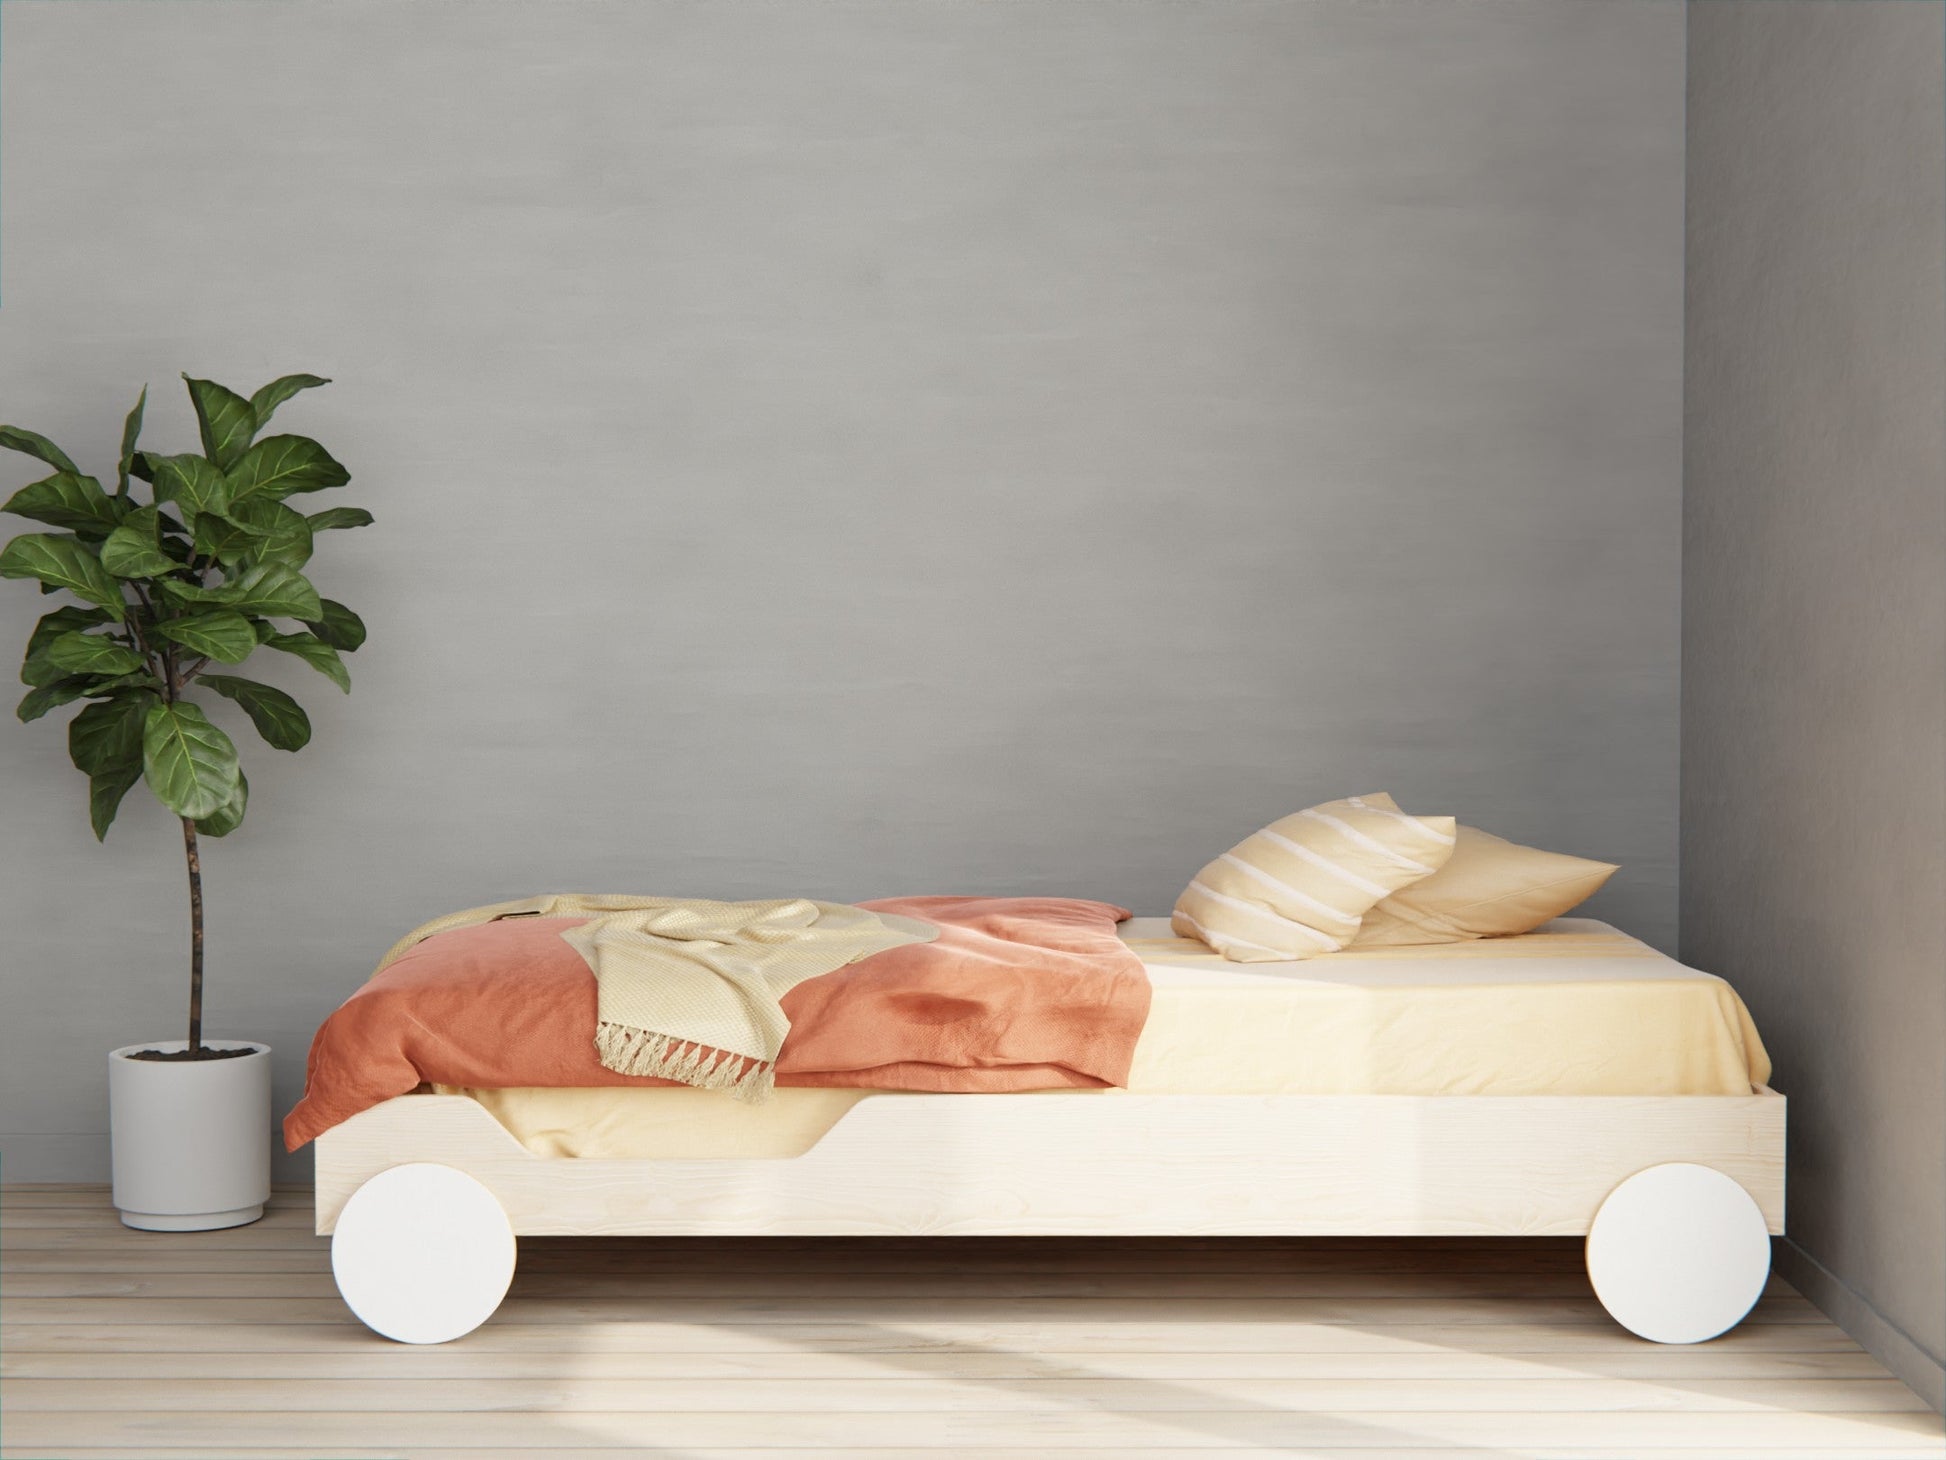 Wooden floor bed frame car for kids AU